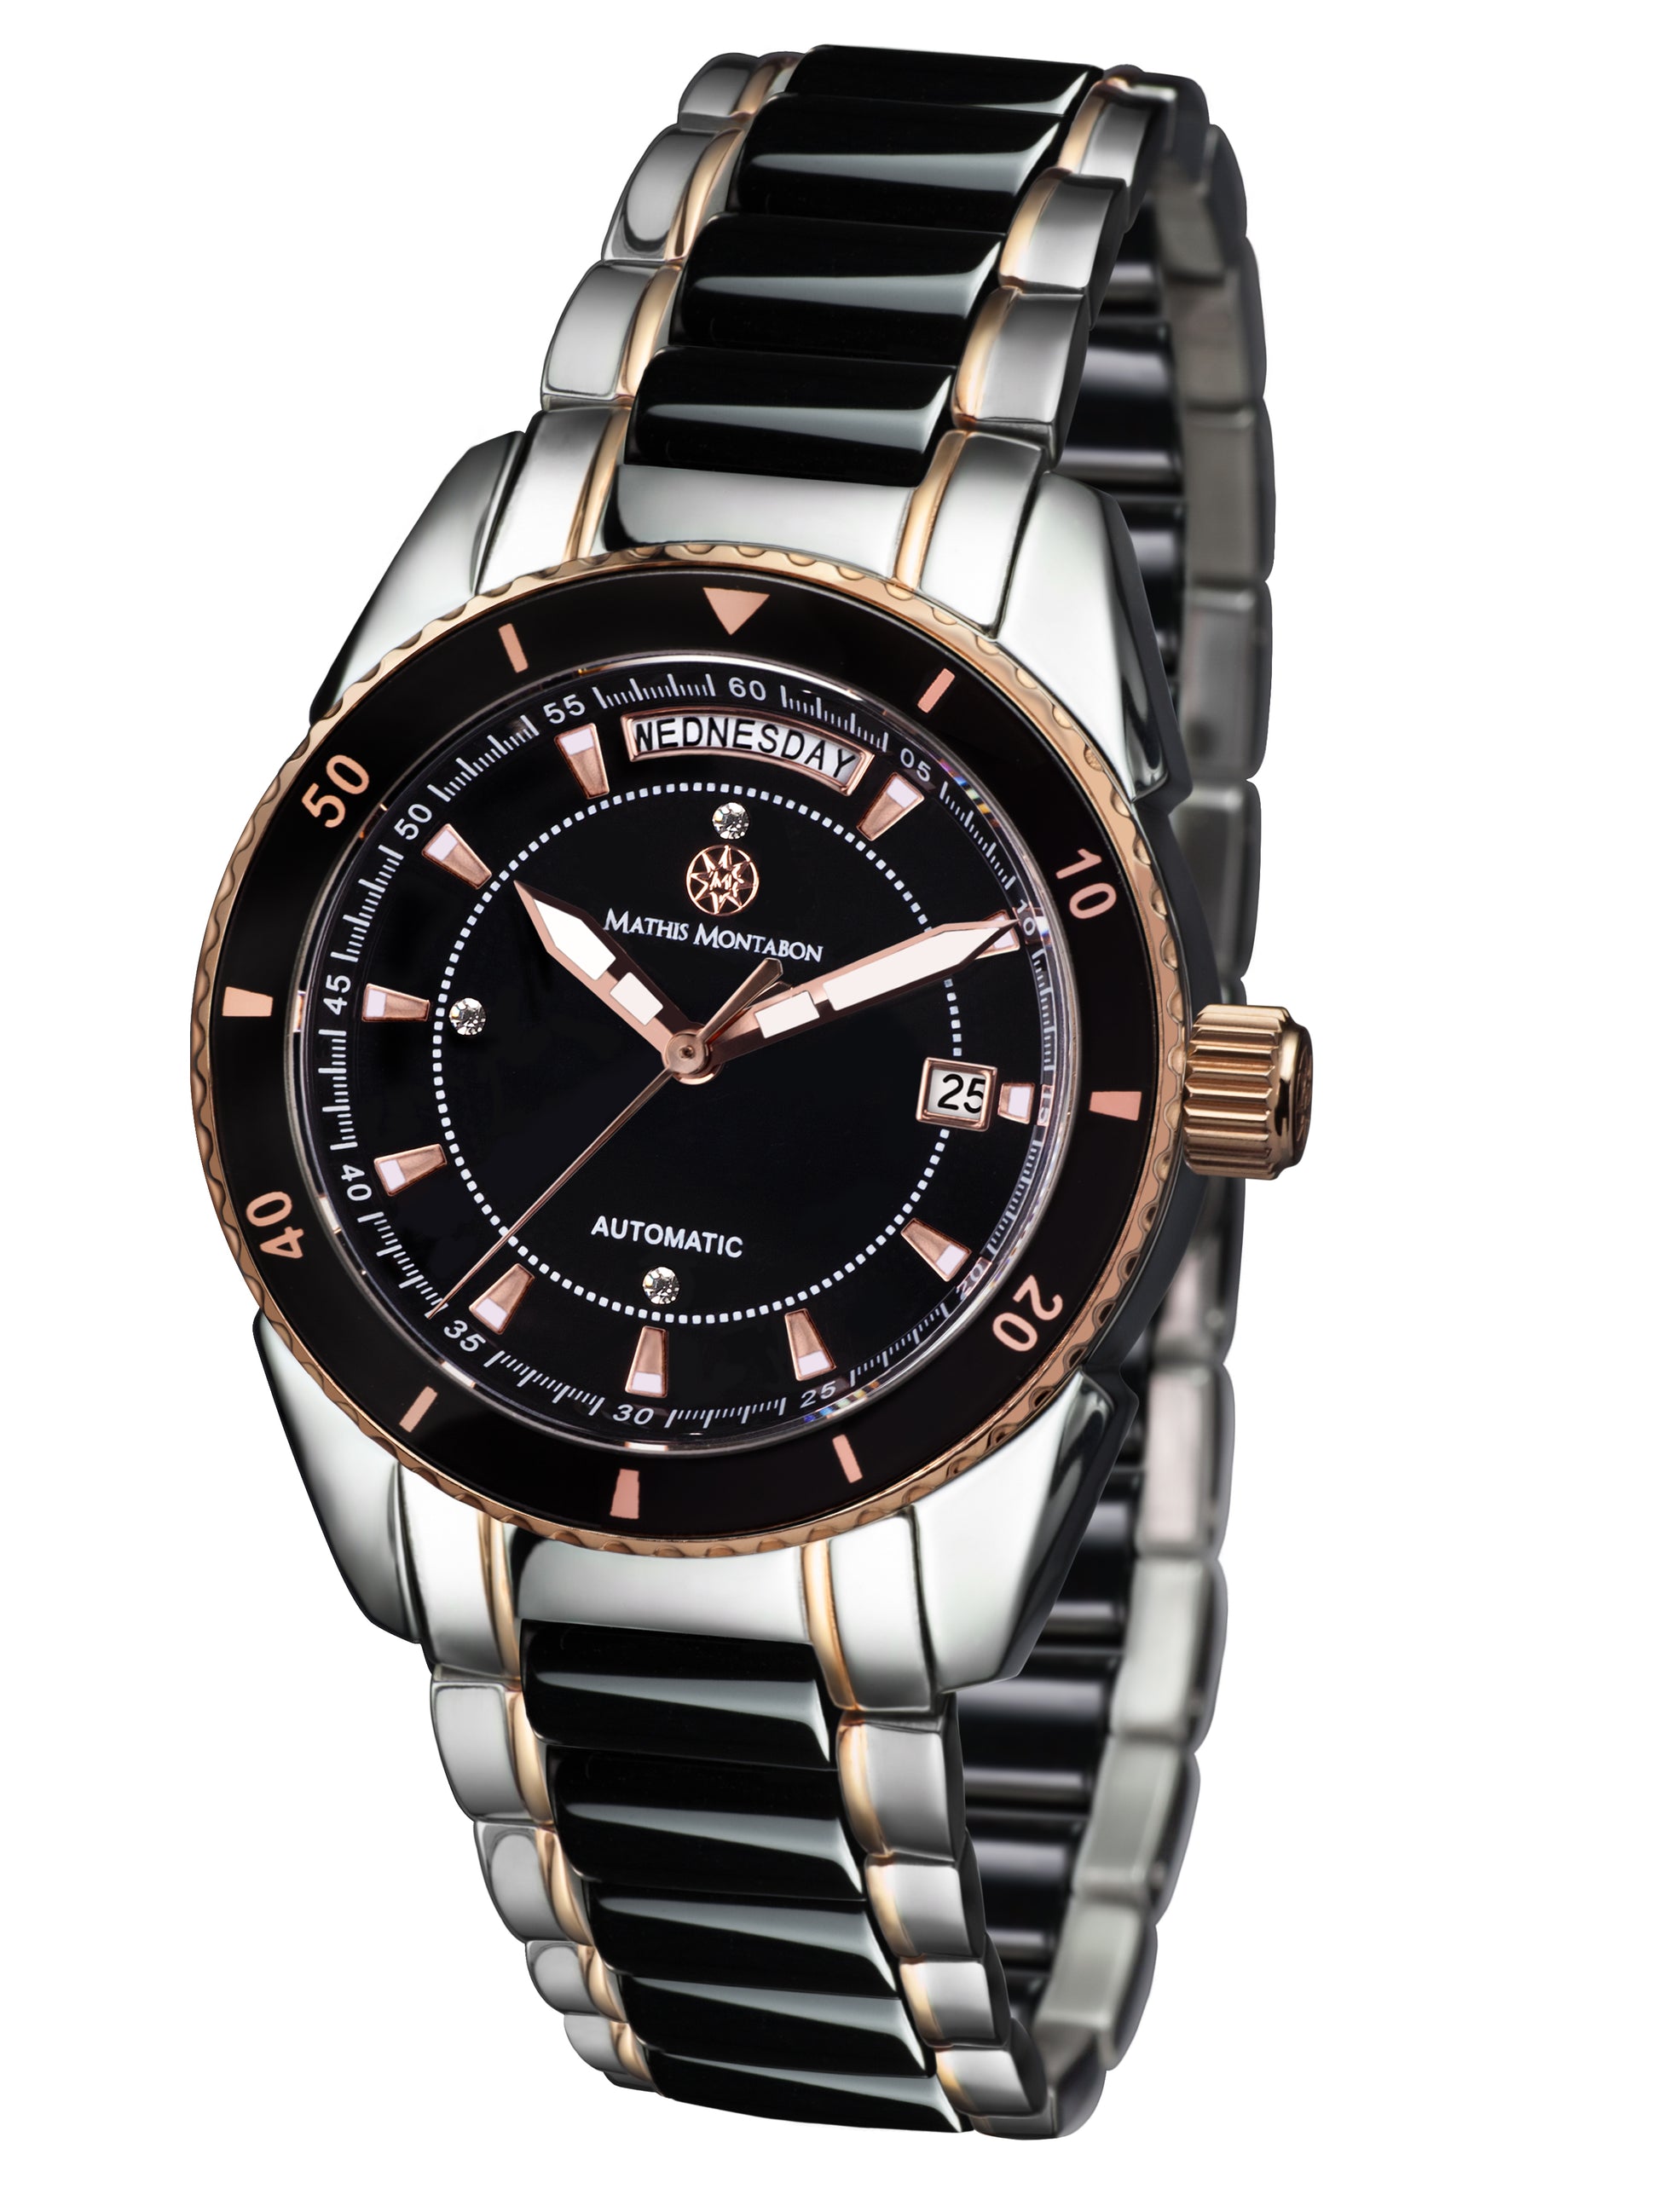 Automatic watches — La Magnifique — Mathis Montabon — rosegold schwarz